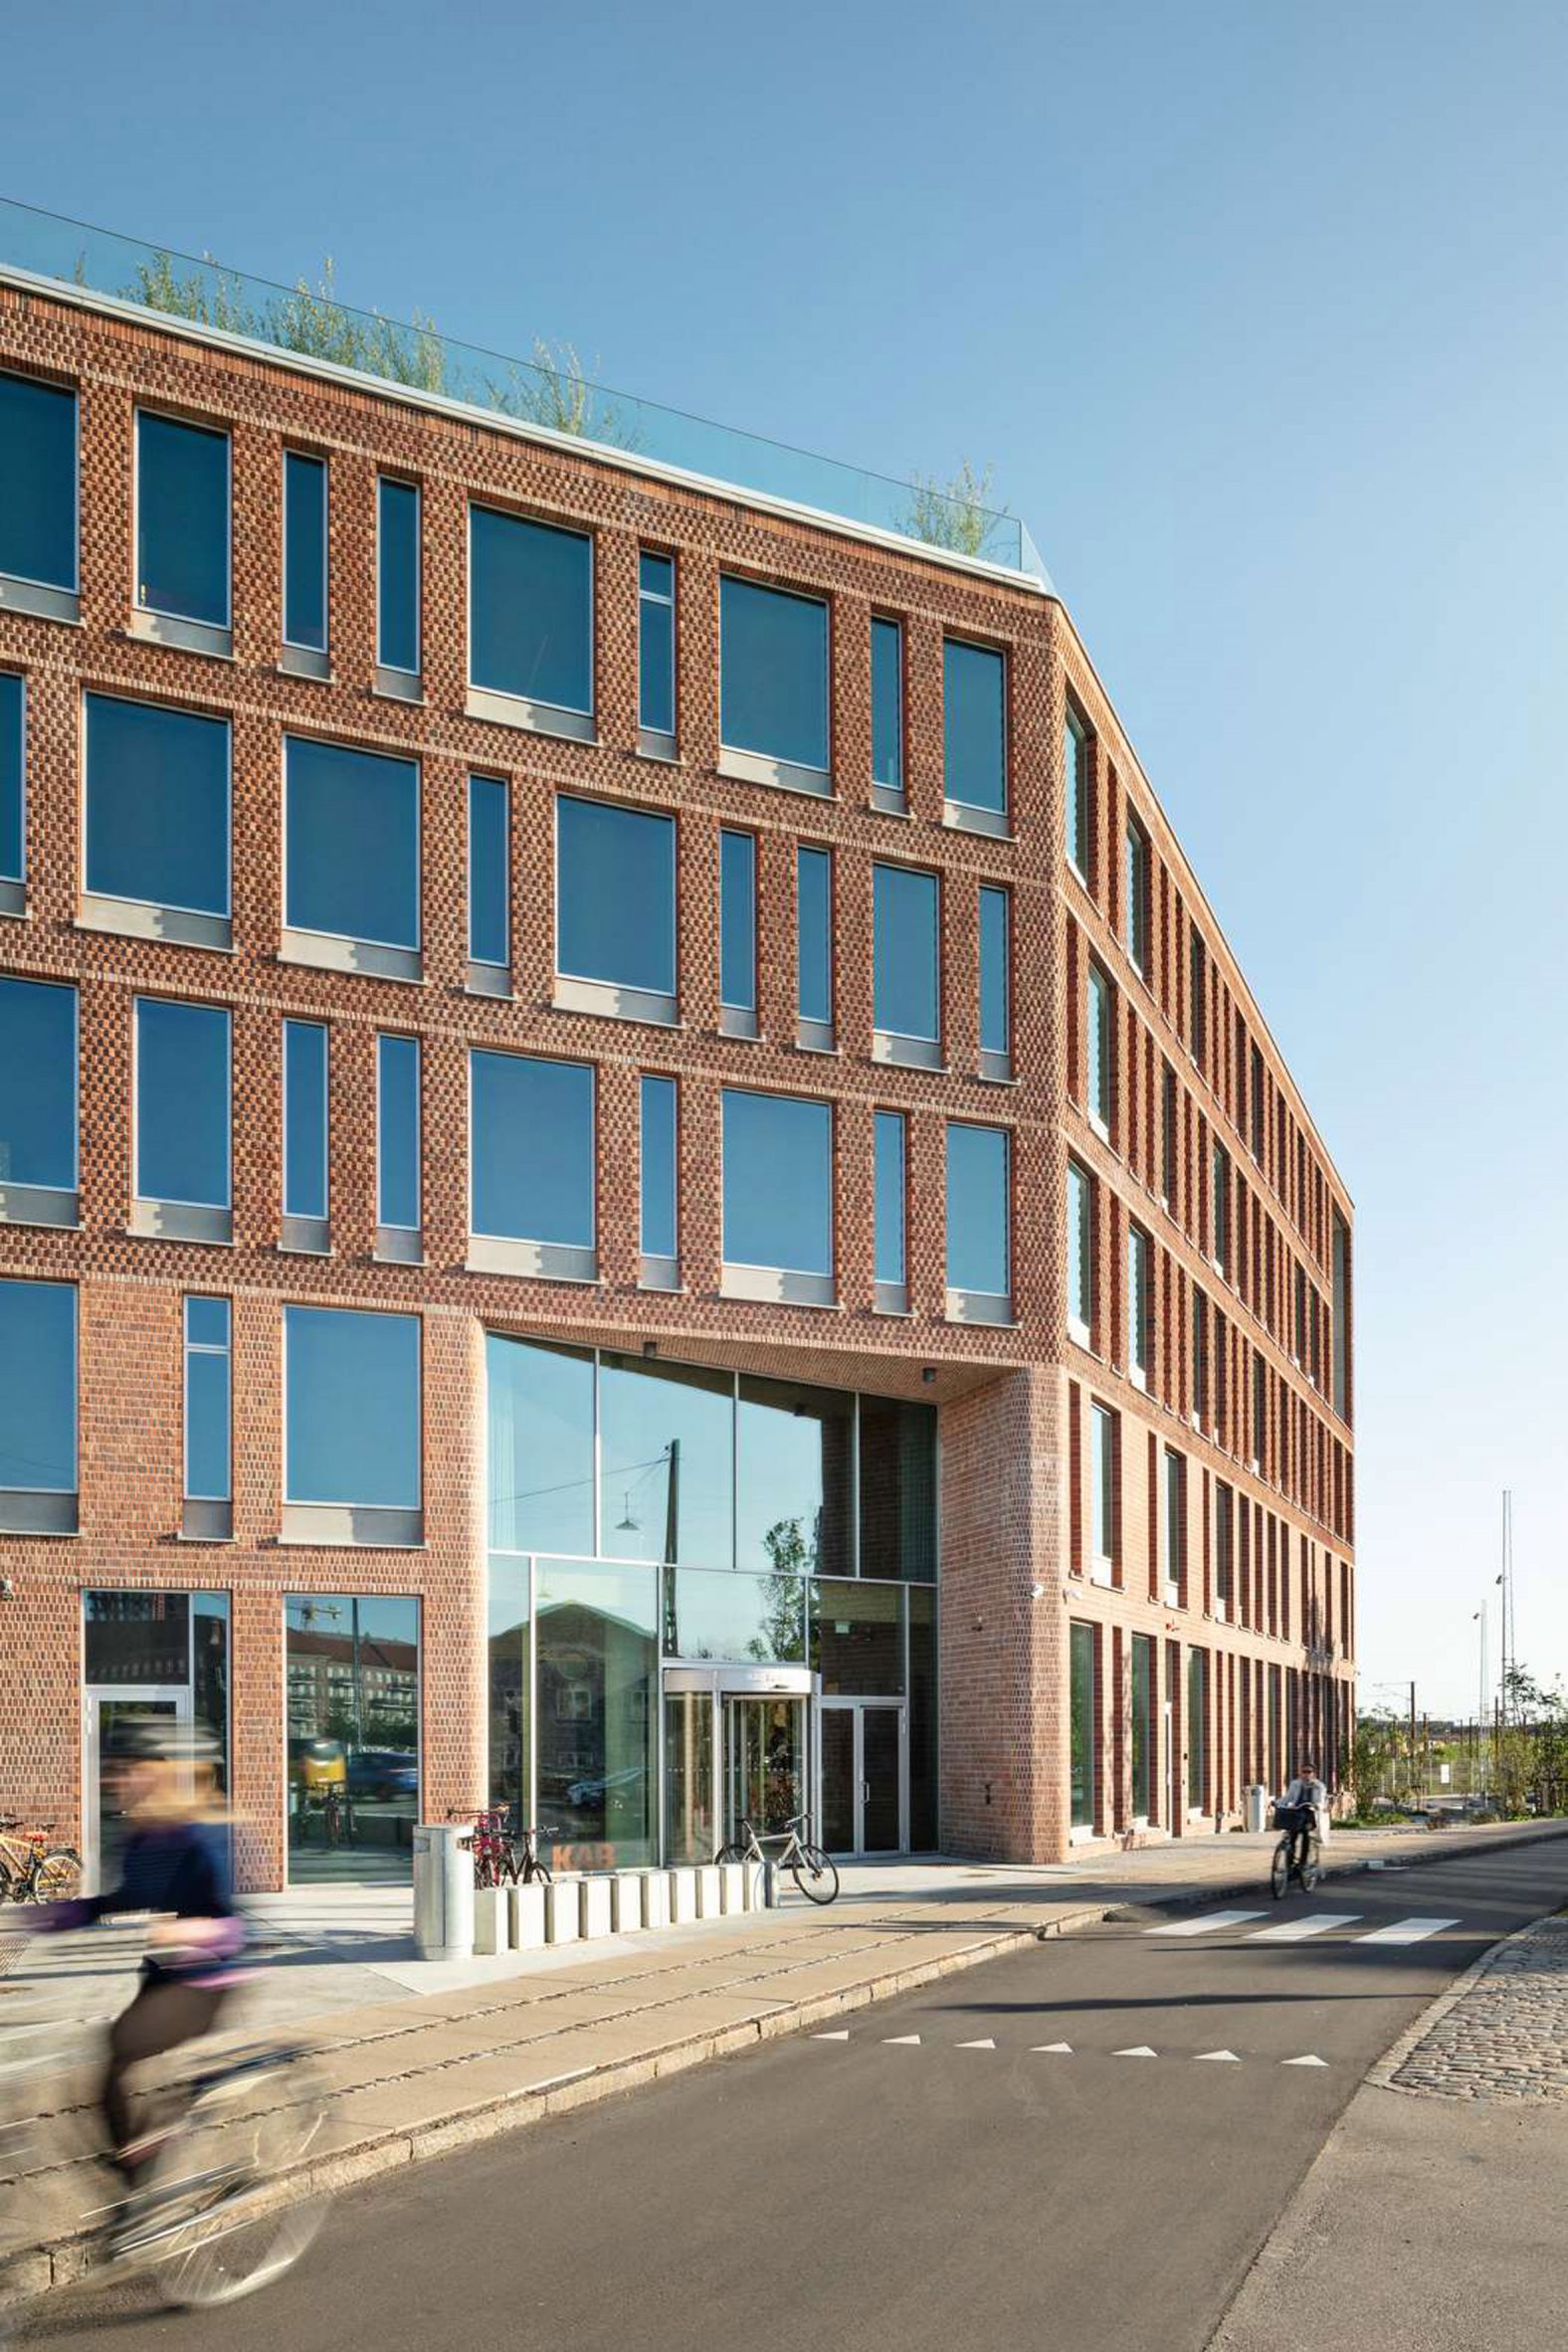 Red brick exterior of KAB headquarters in Copenhagen